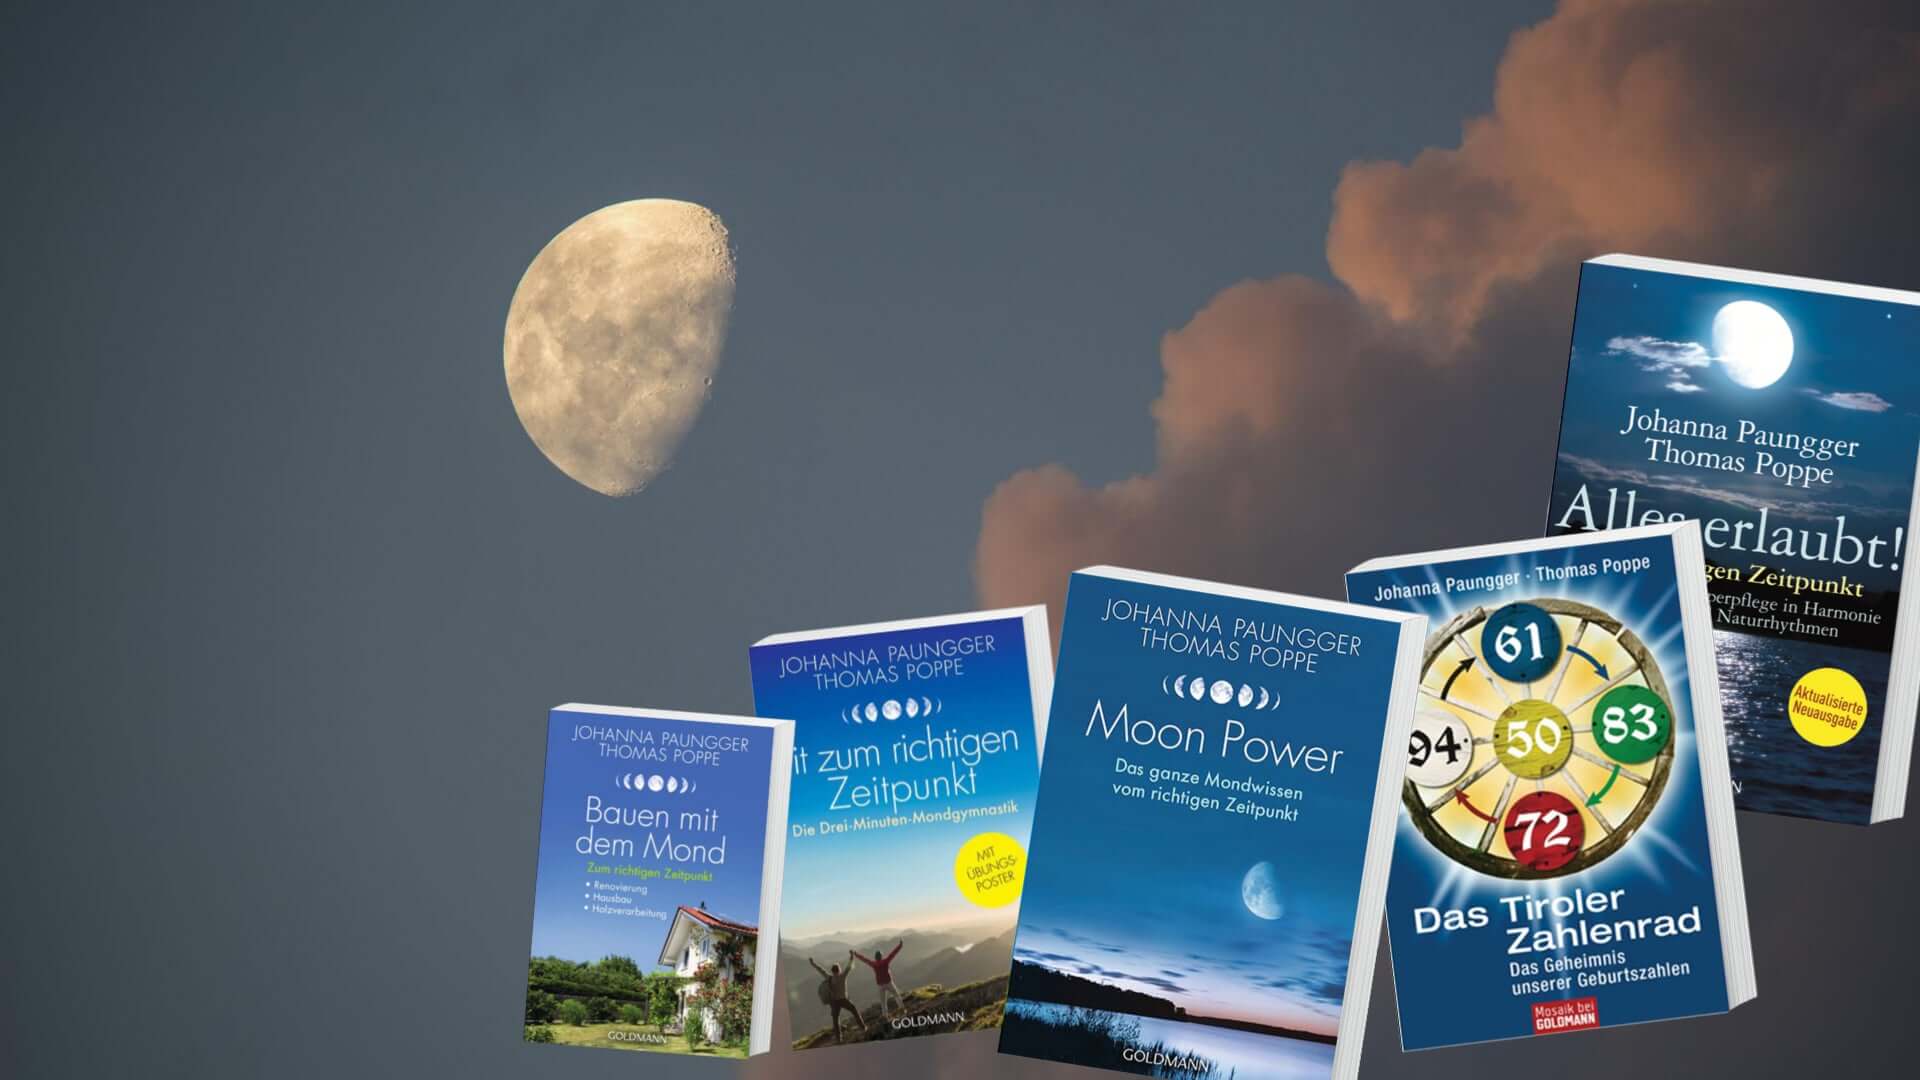 Bücher von Paungger Poppe | Mondversand